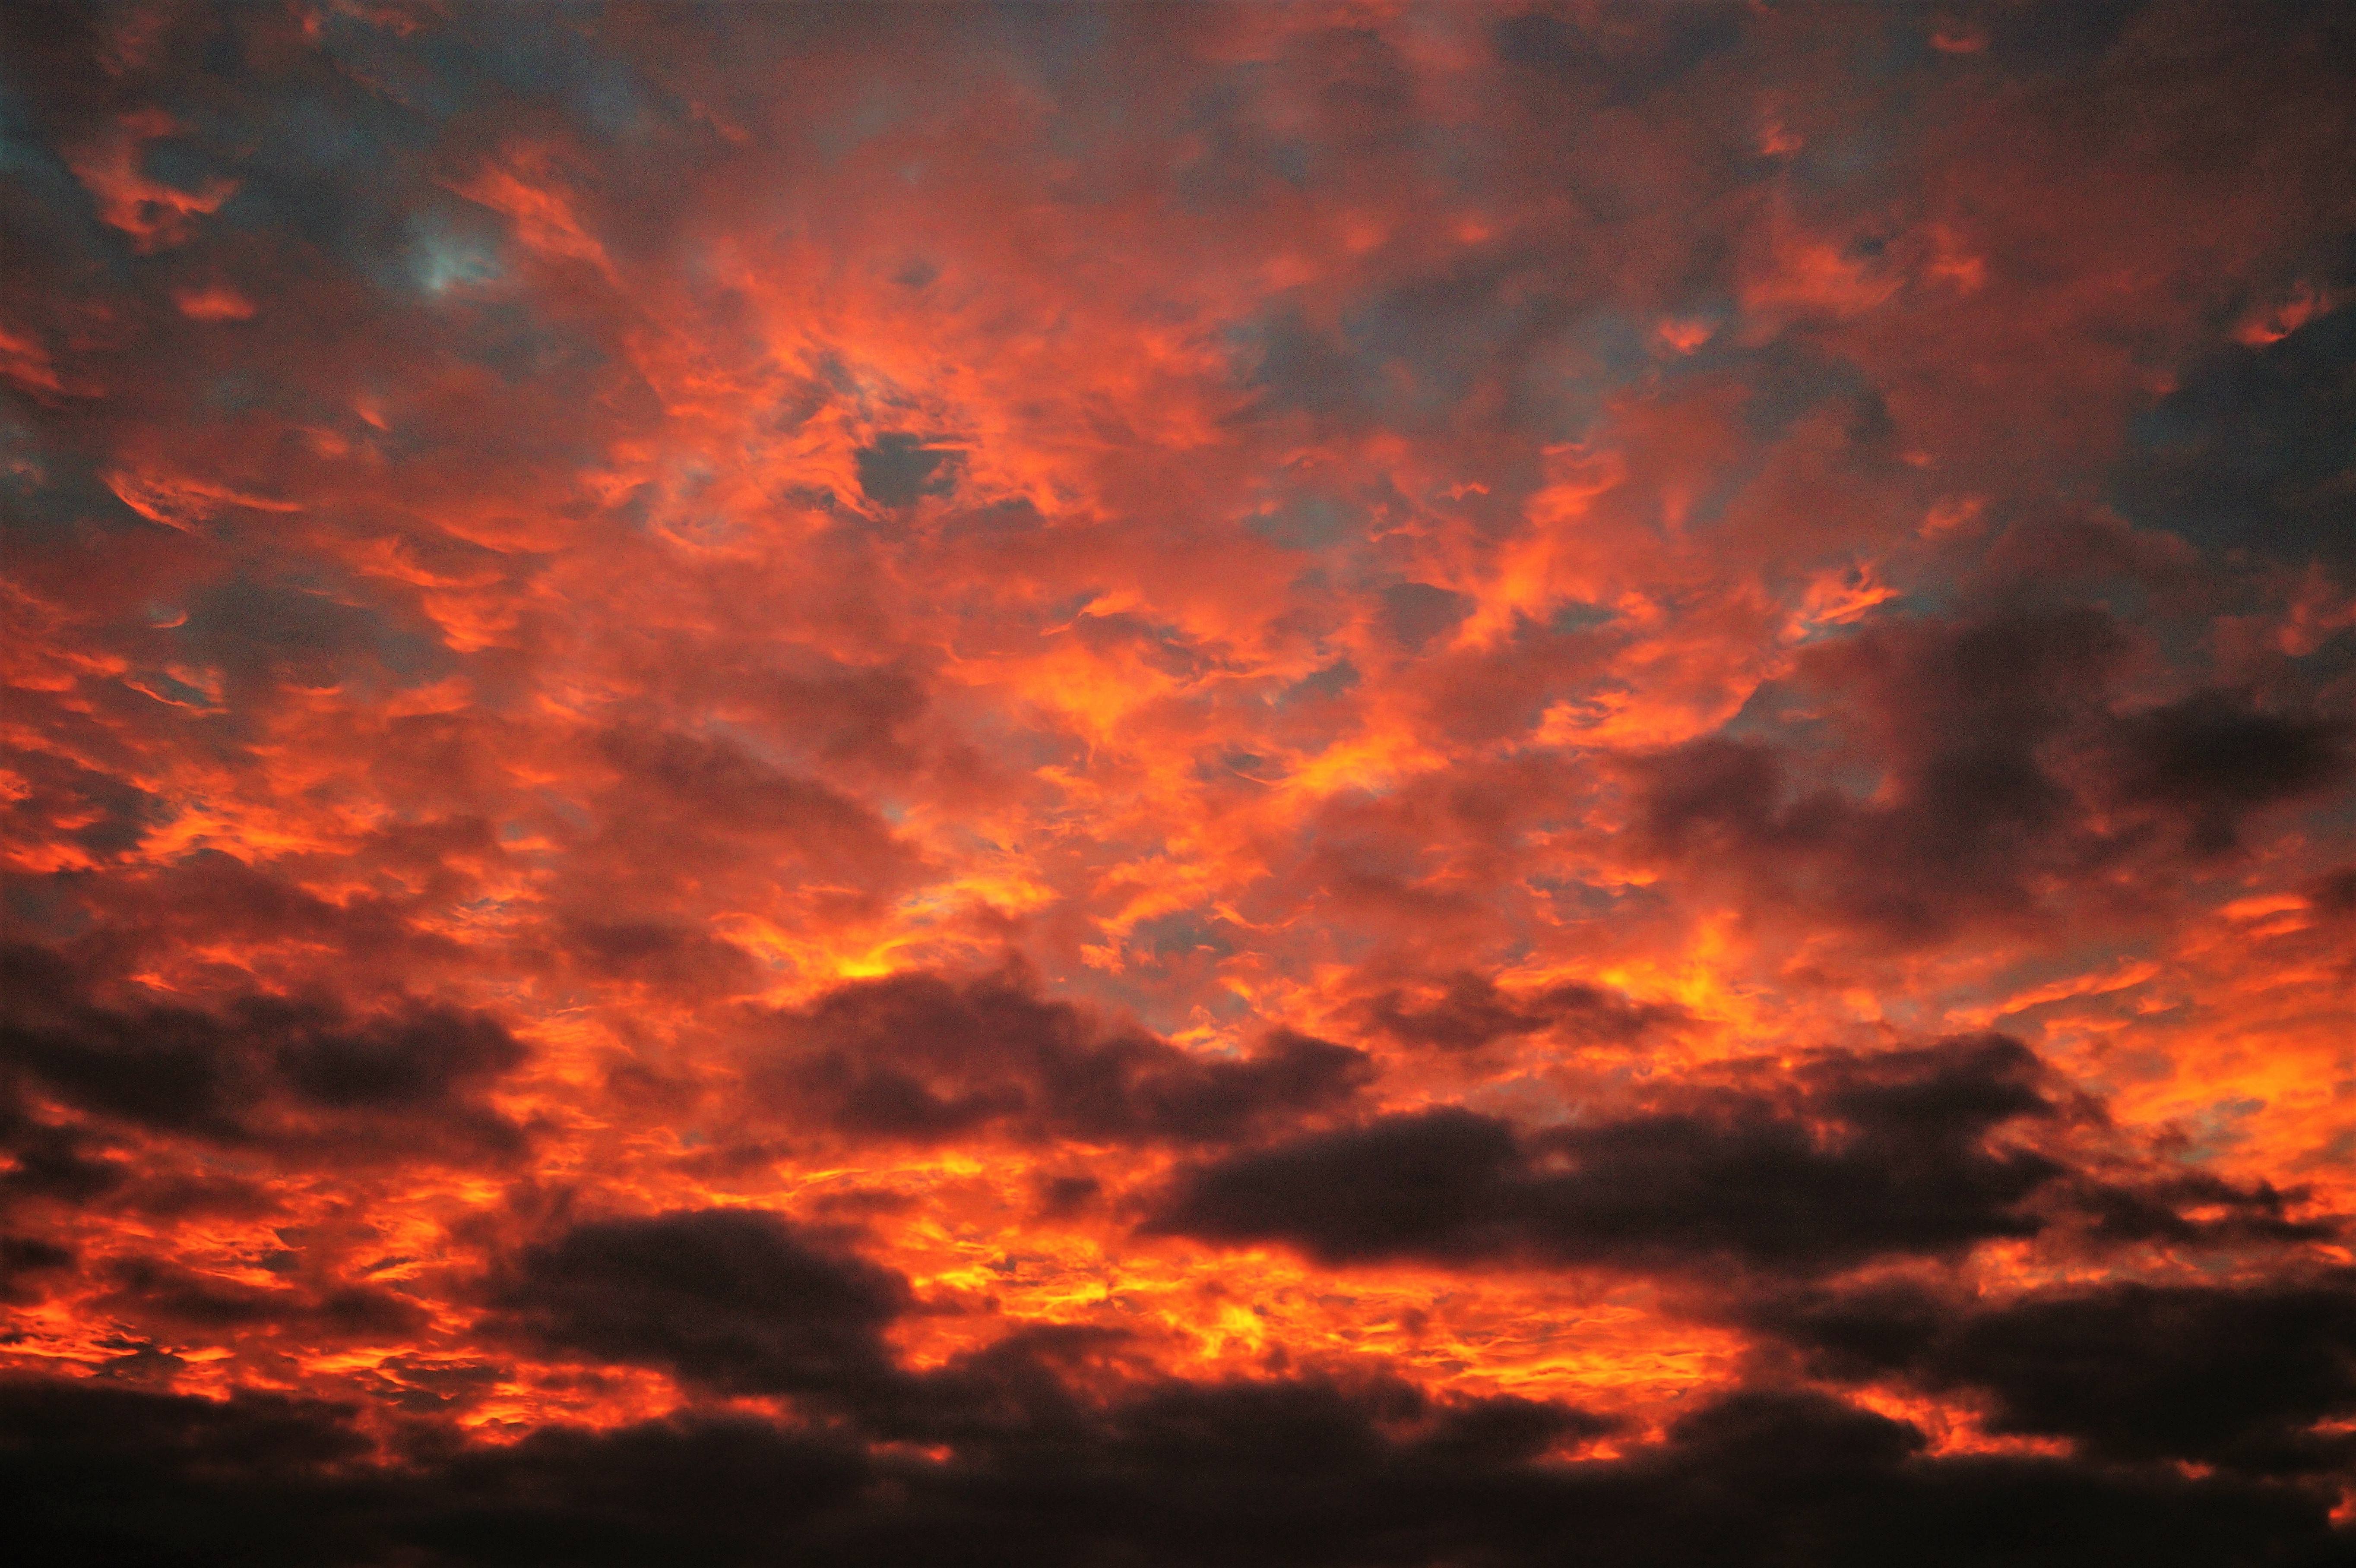 Скачать обои бесплатно Закат, Небо, Облака, Земля/природа, Оранжевый Цвет) картинка на рабочий стол ПК